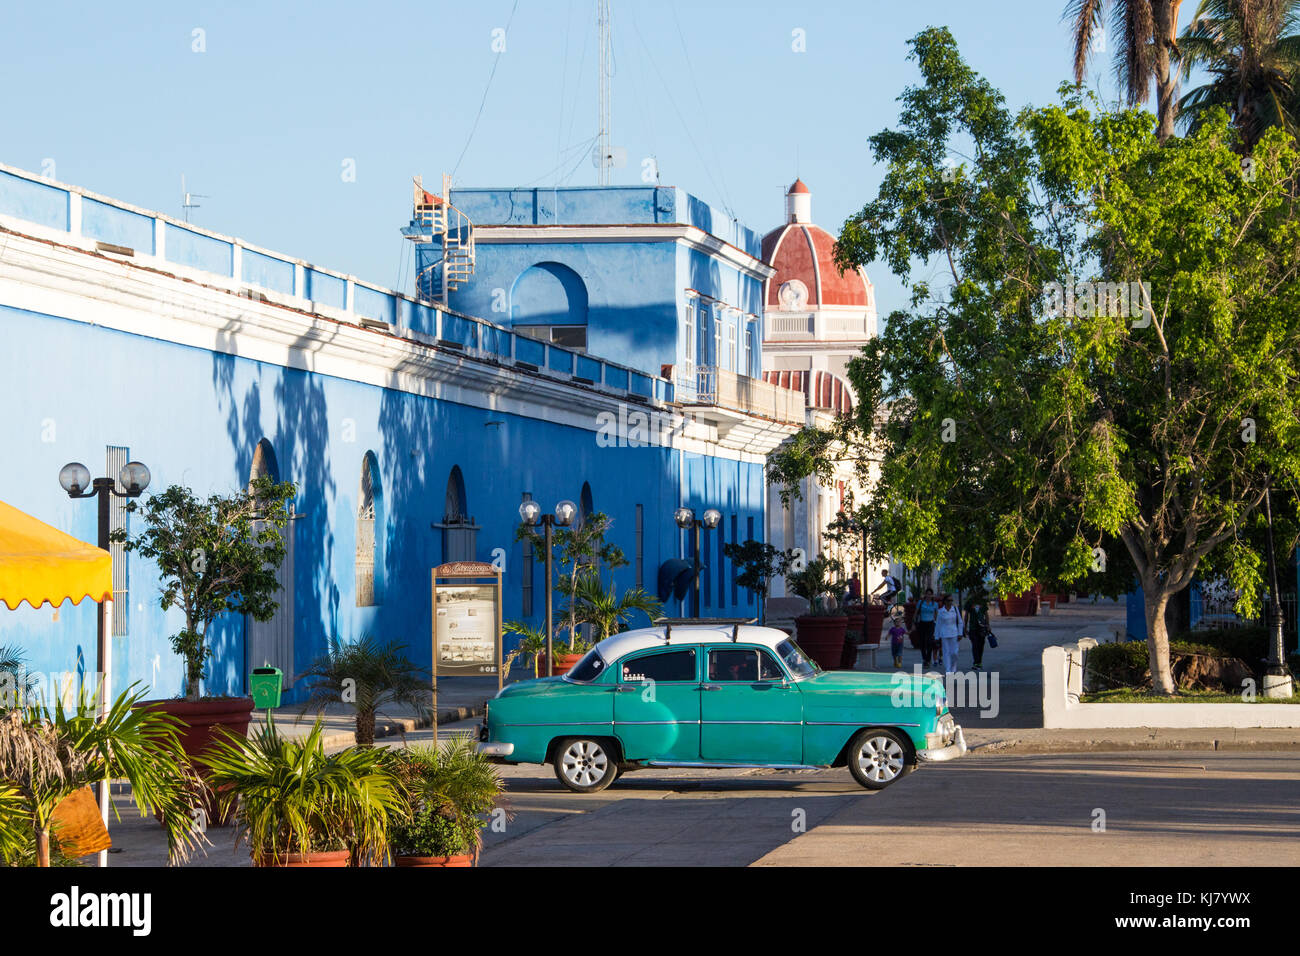 Vintage American car, Cienfuegos, Cuba Stock Photo